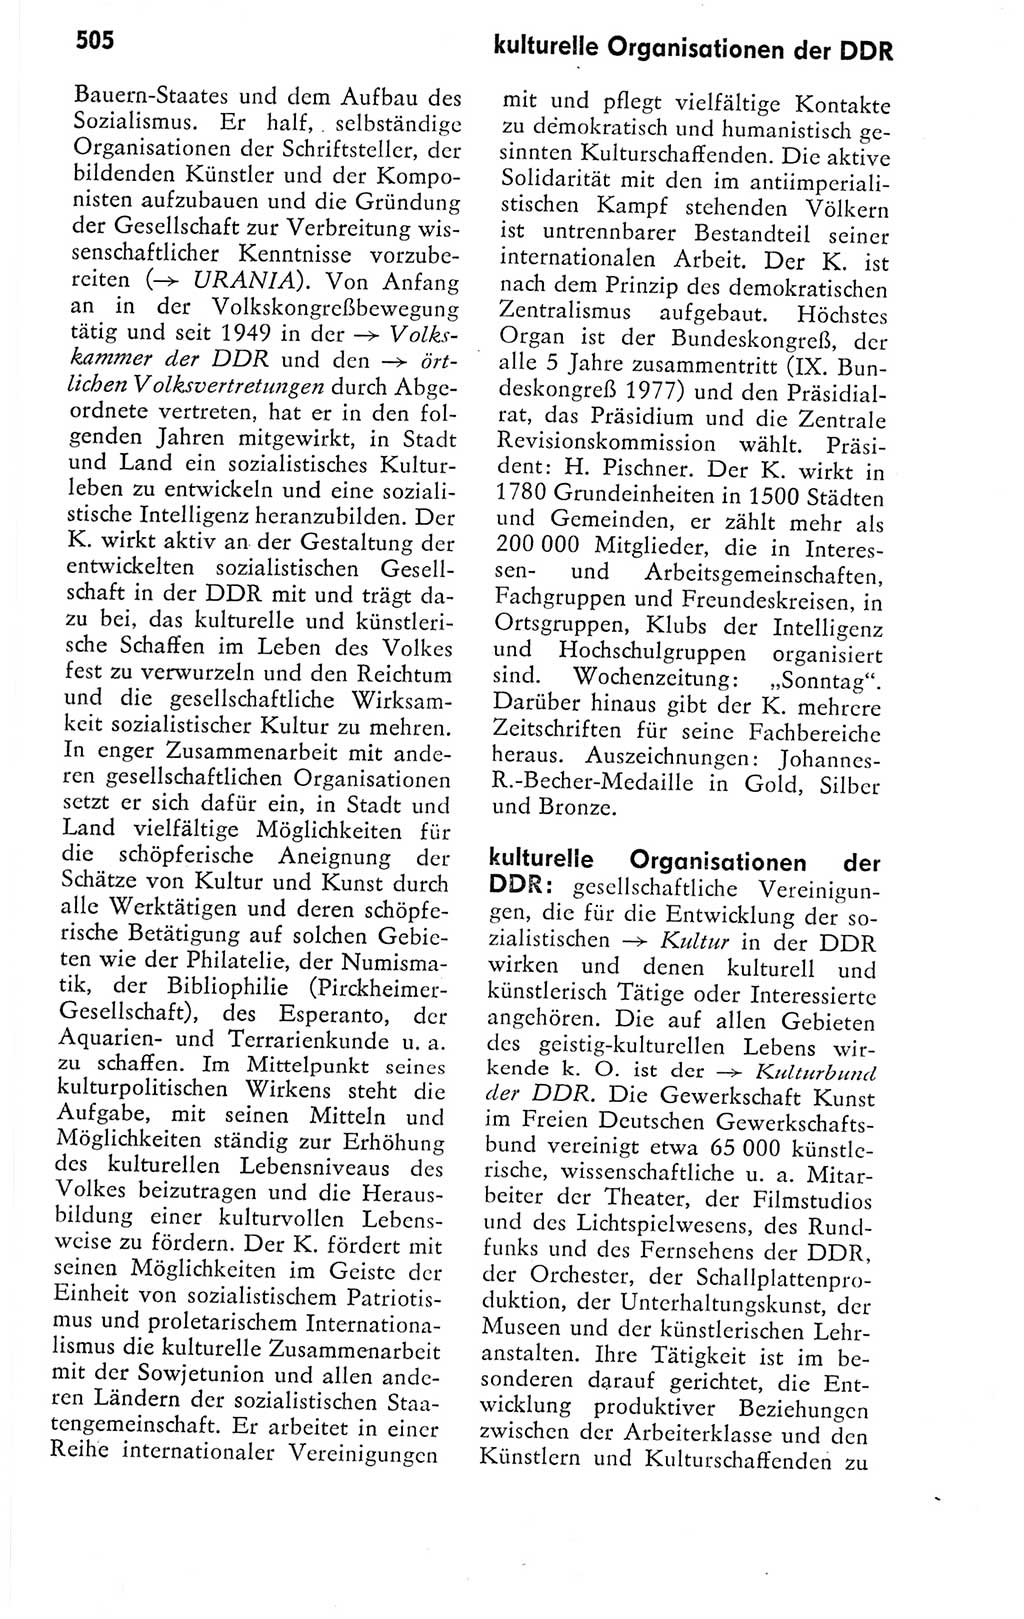 Kleines politisches Wörterbuch [Deutsche Demokratische Republik (DDR)] 1978, Seite 505 (Kl. pol. Wb. DDR 1978, S. 505)